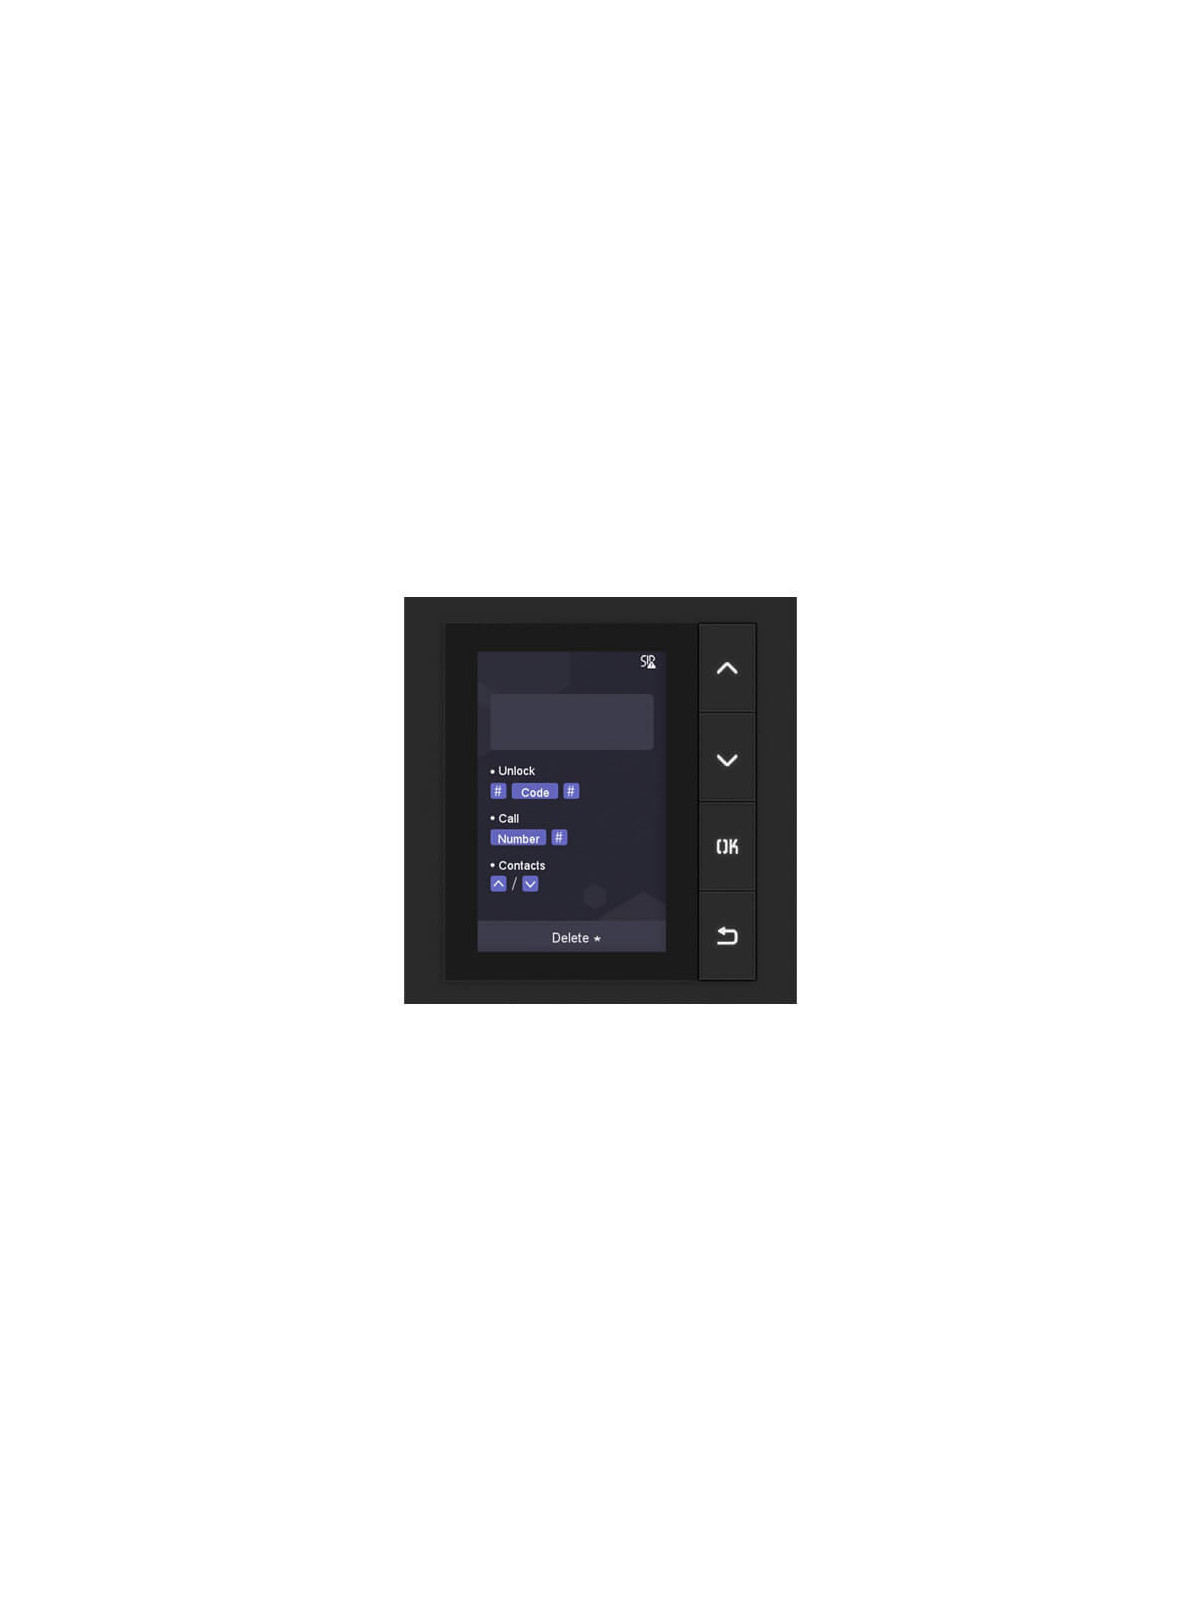 Modulo IP para estación exterior Hikvision DS-KD-DIS display LCD 3.5"